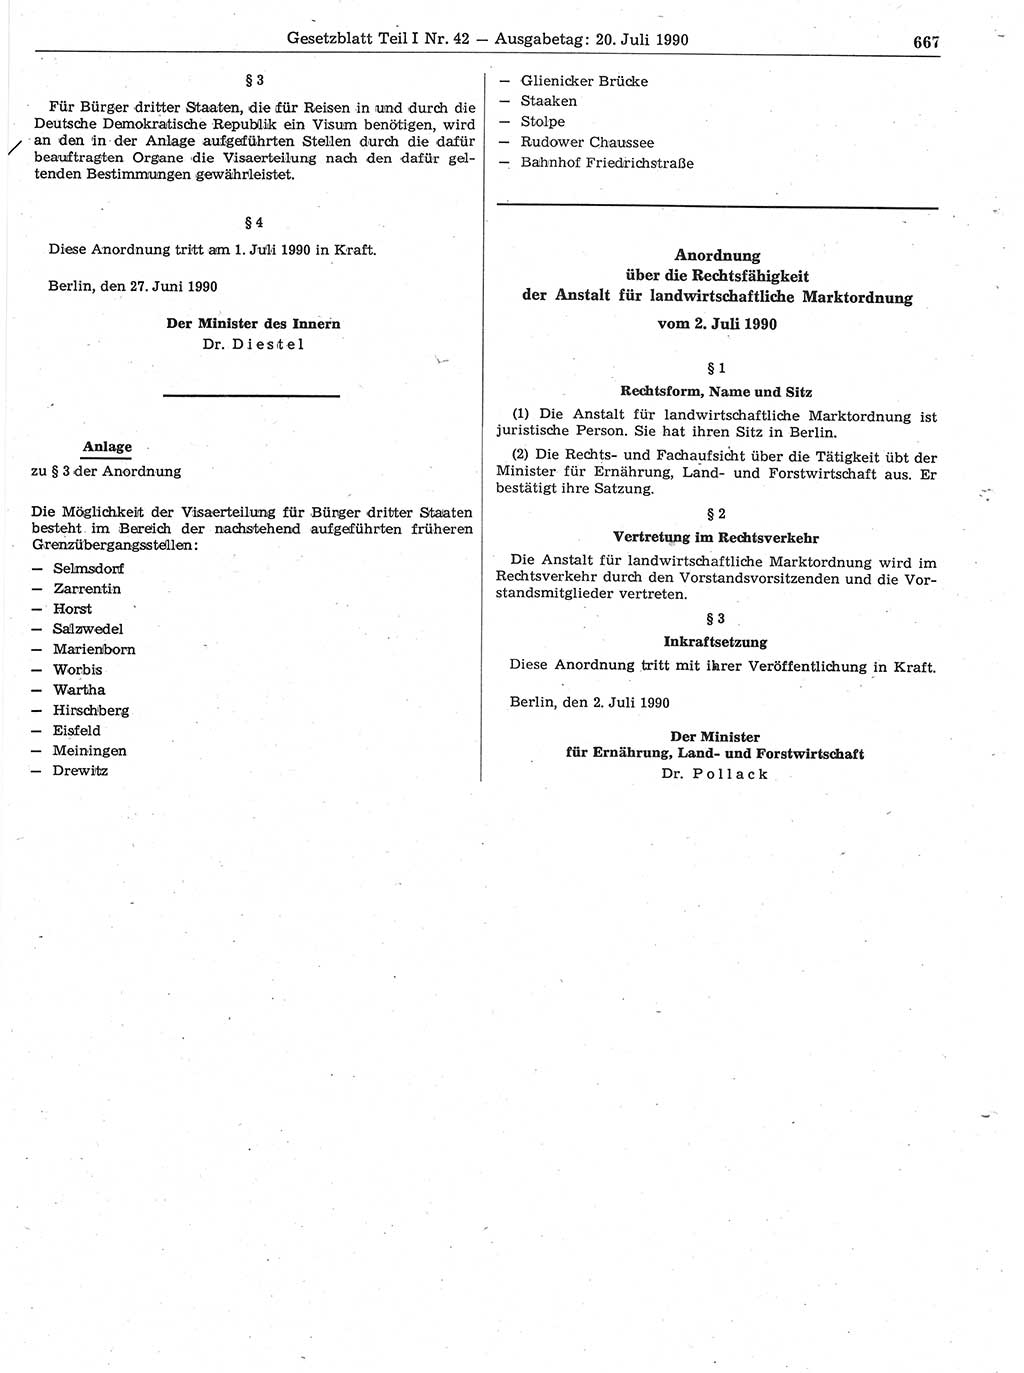 Gesetzblatt (GBl.) der Deutschen Demokratischen Republik (DDR) Teil Ⅰ 1990, Seite 667 (GBl. DDR Ⅰ 1990, S. 667)